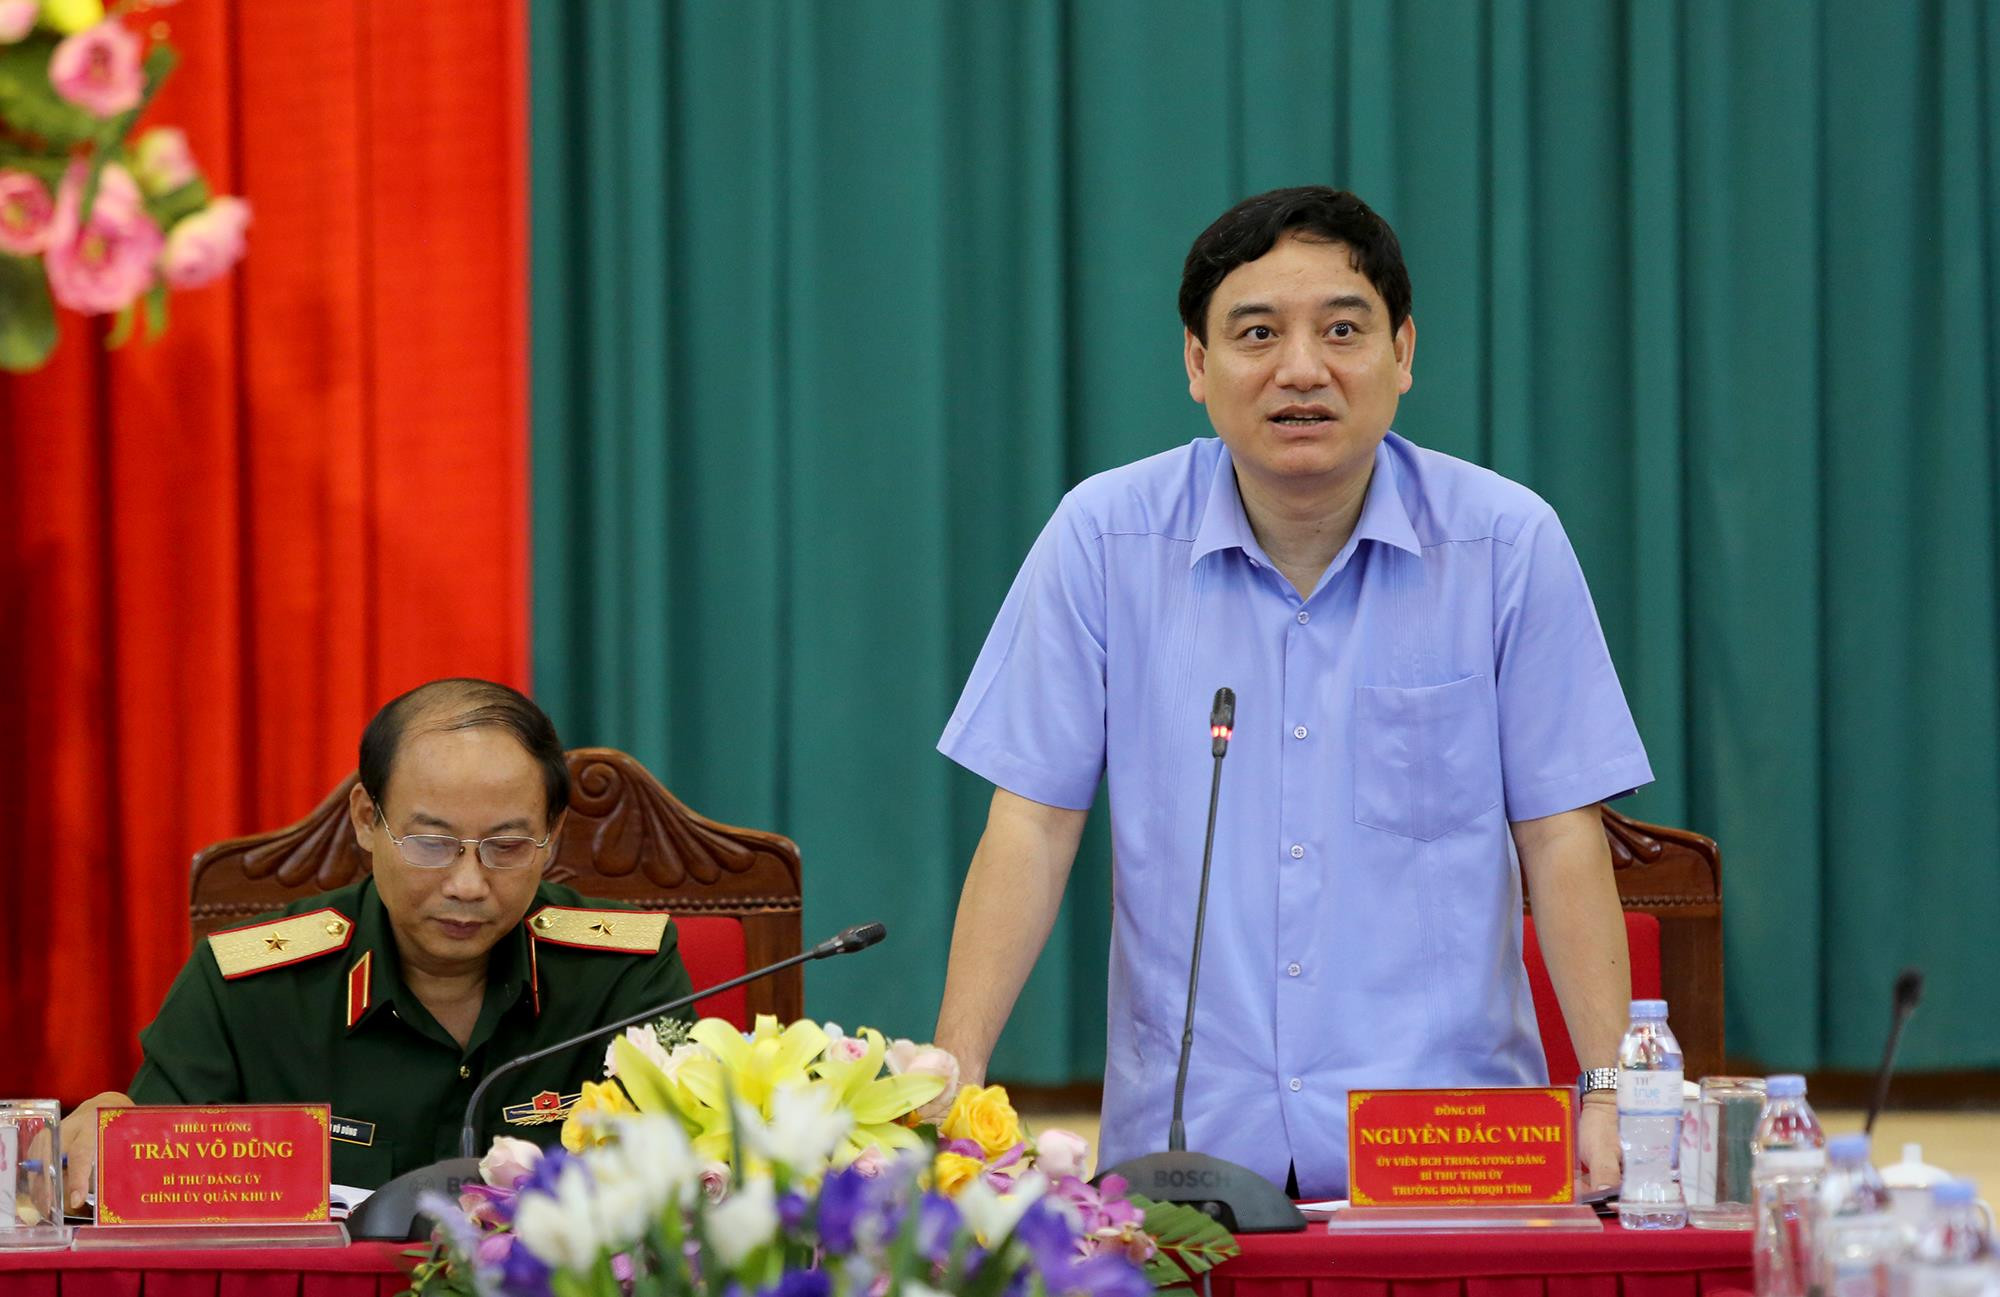 Bí thư tỉnh ủy Nguyễn Đắc Vinh khẳng định quyết tâm cùng với Quân khu 4 xây dựng thế trận phòng thủ vững chắc trên địa bàn tỉnh Nghệ An. Ảnh: Đức Anh